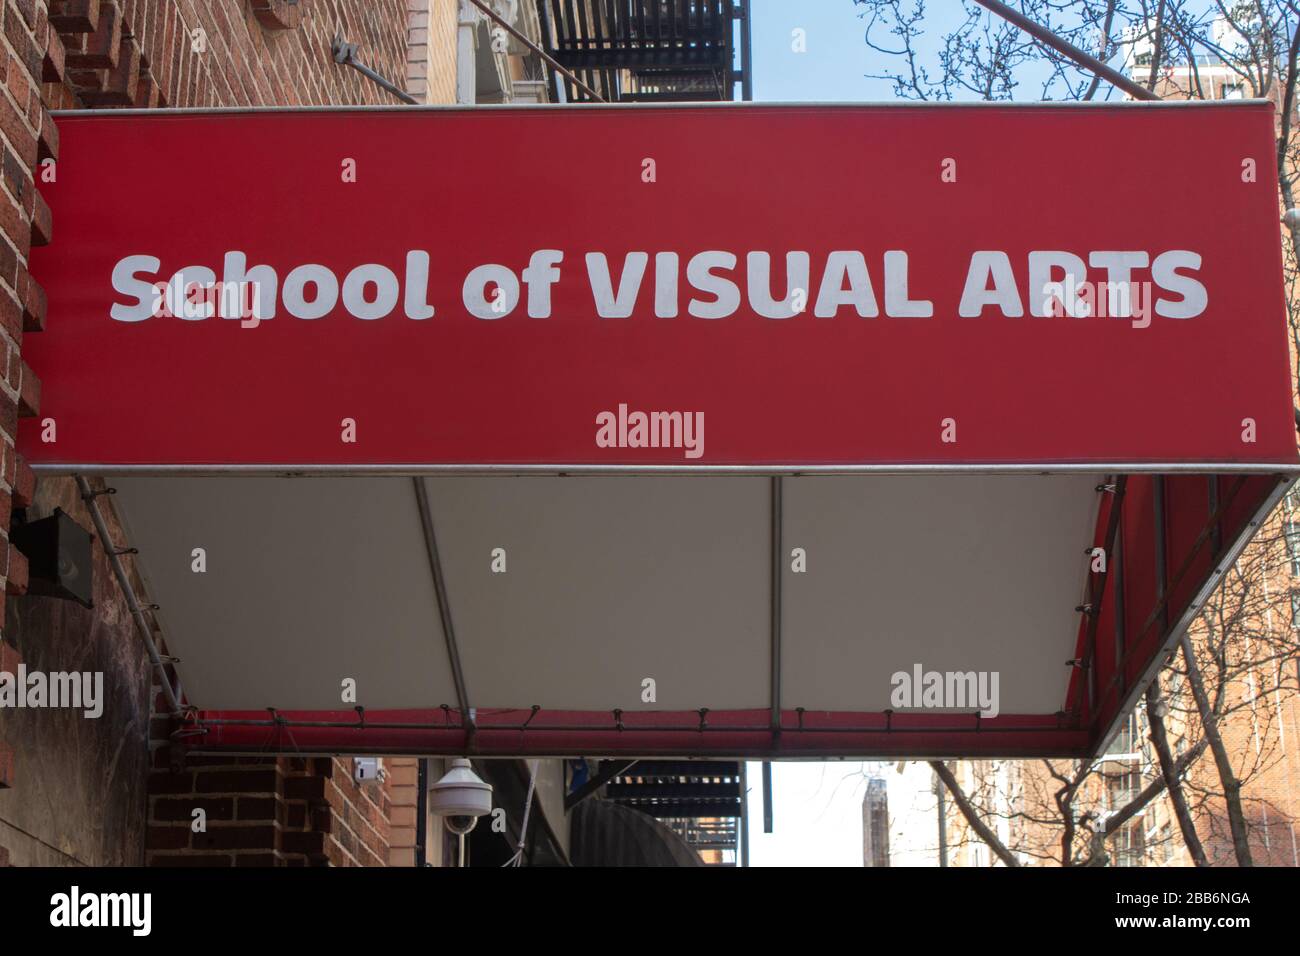 una tenda rossa sopra un'entrata ad un edificio sul campus della scuola delle arti visive, o sva, a manhattan, la città di new york con il nome della scuola Foto Stock